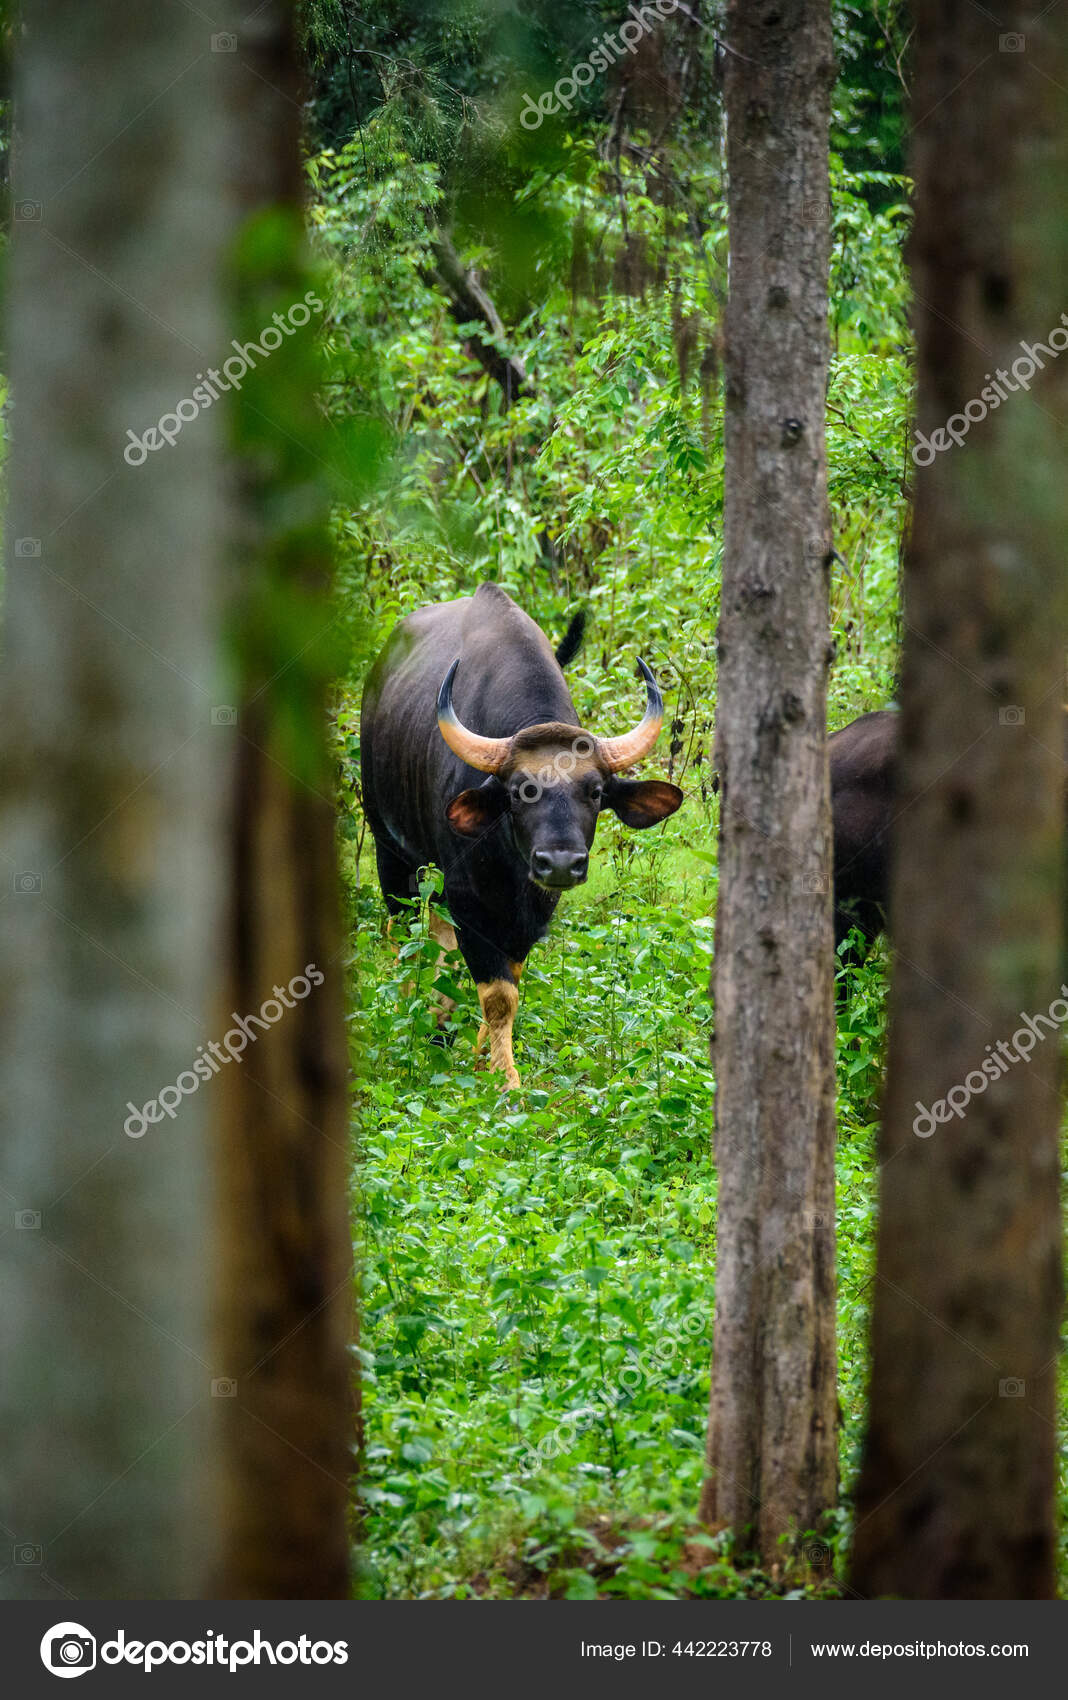 Gaur or indian bison Stock Photos, Royalty Free Gaur or indian bison Images  | Depositphotos